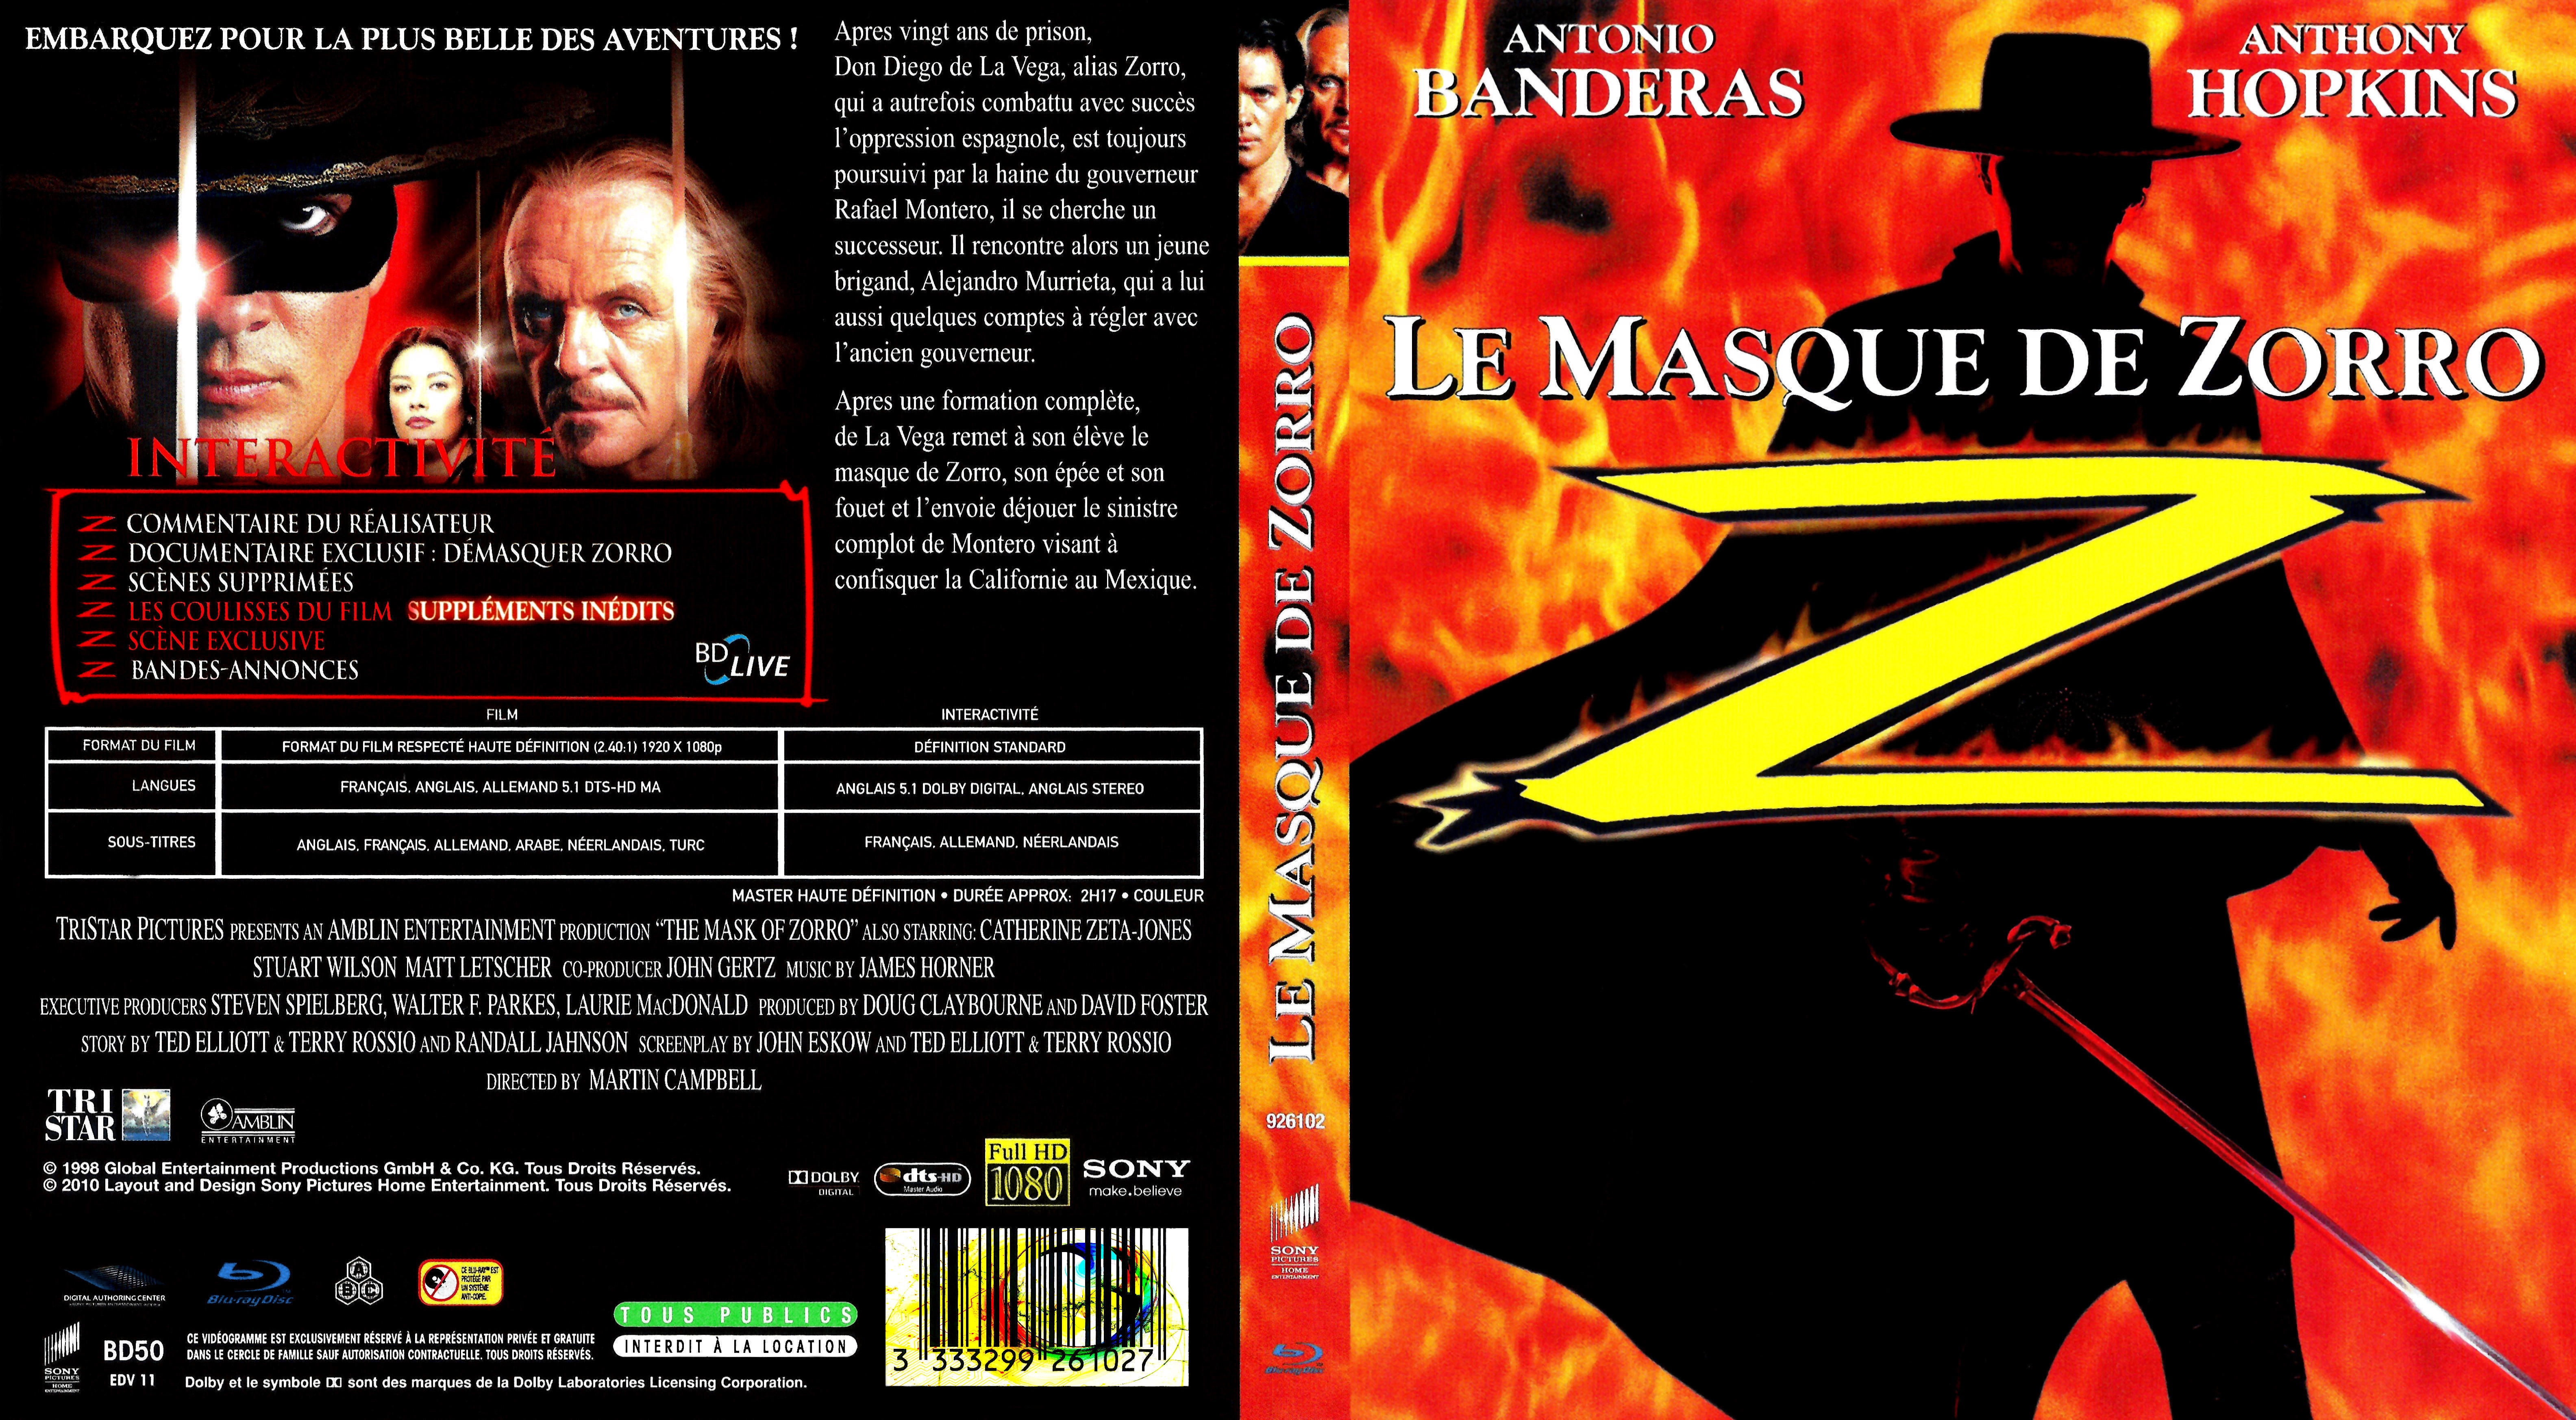 Jaquette DVD Le masque de zorro (BLU-RAY) v2